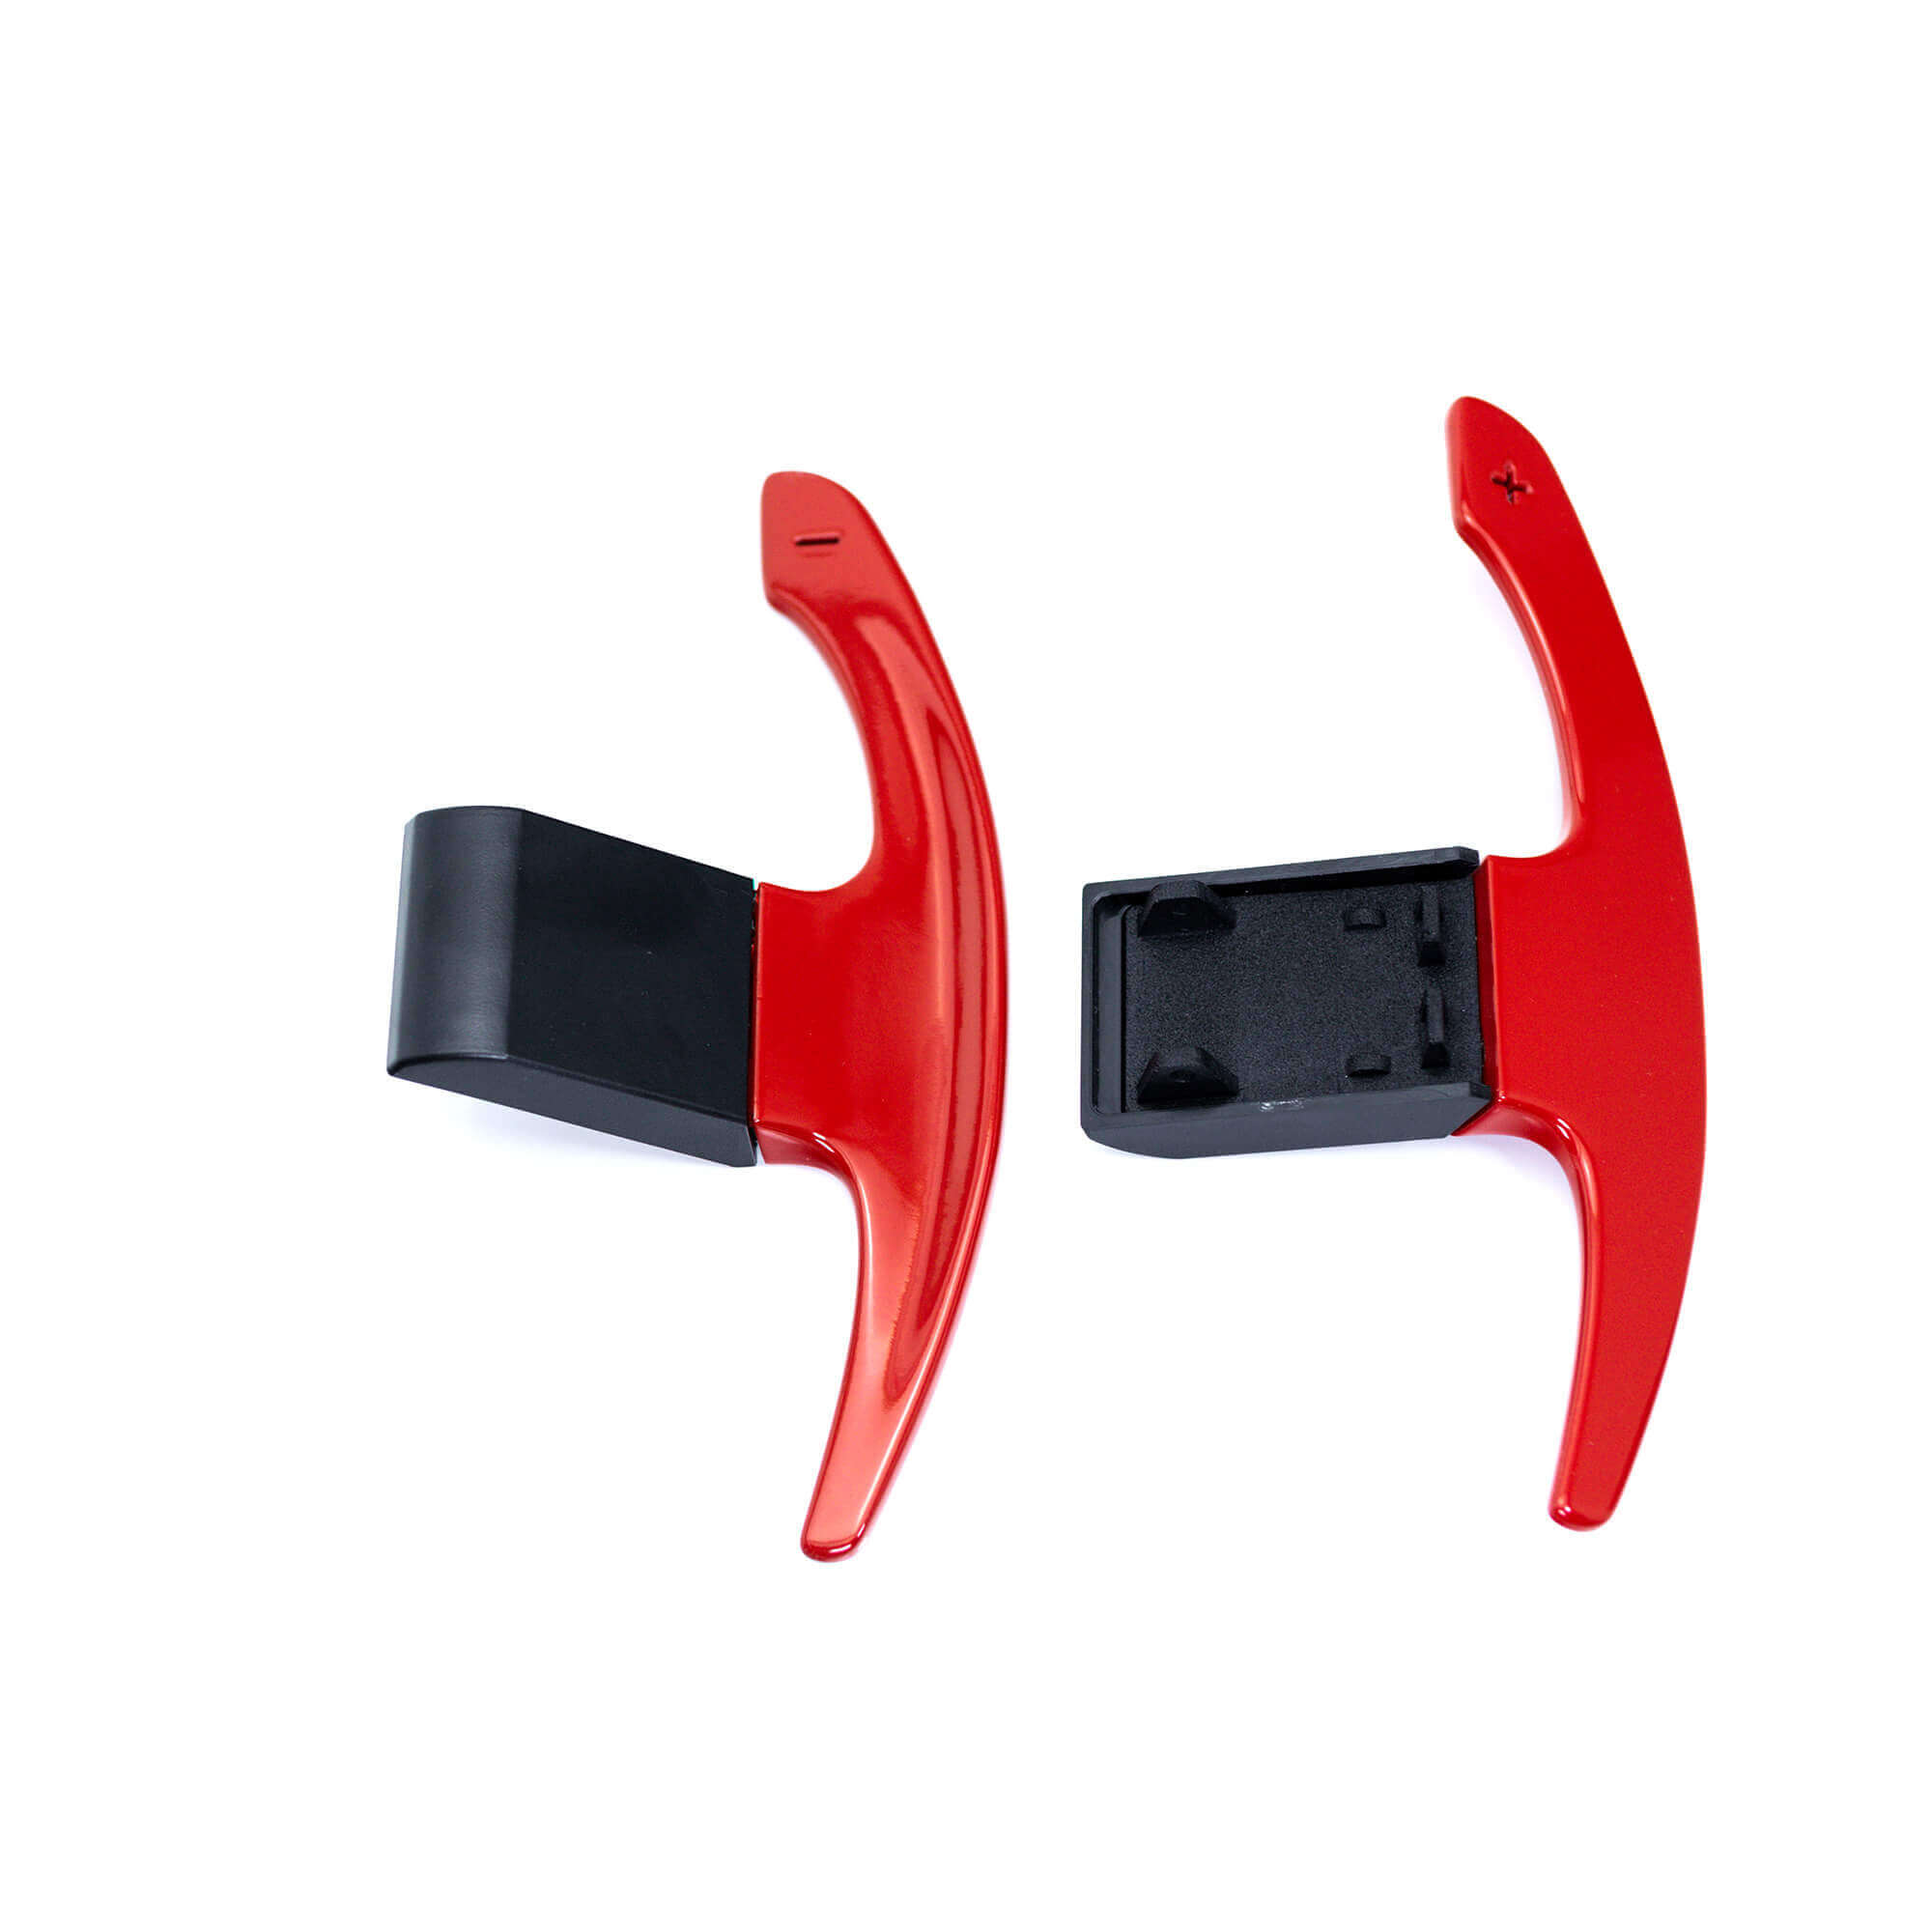 Paddle Shifters - Aluminium Schaltwippen - Rot glänzend, Rot glänzend